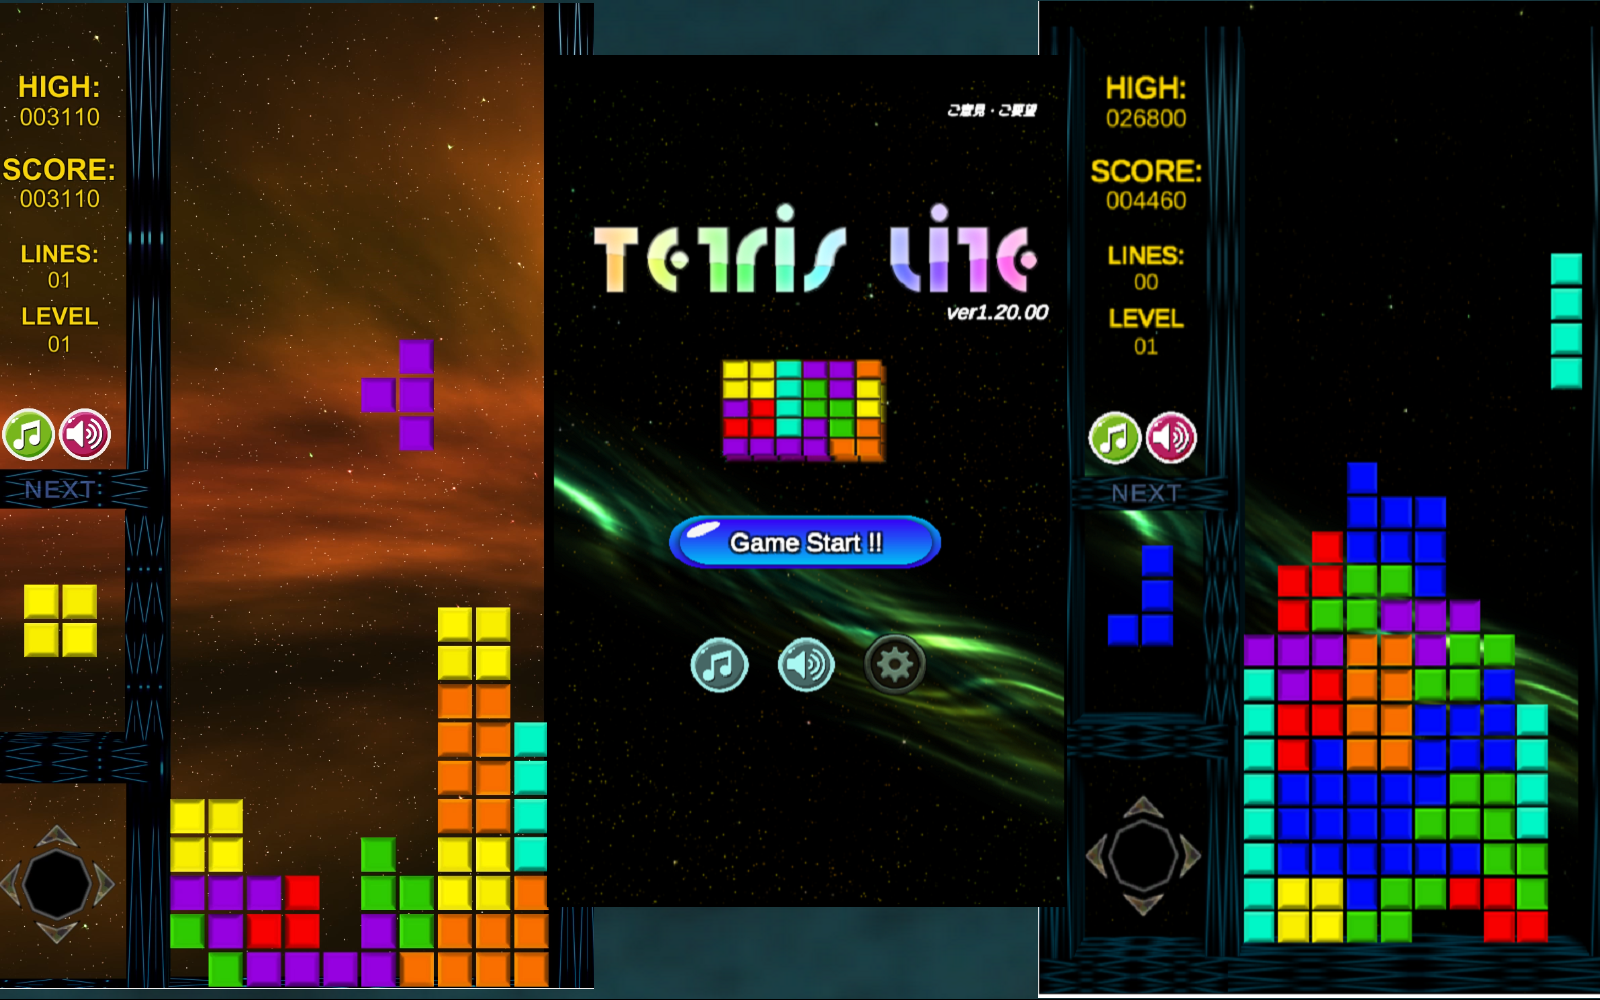 テトリス風落ち物パズルゲーム「Tetris Lite ver1.20.00」